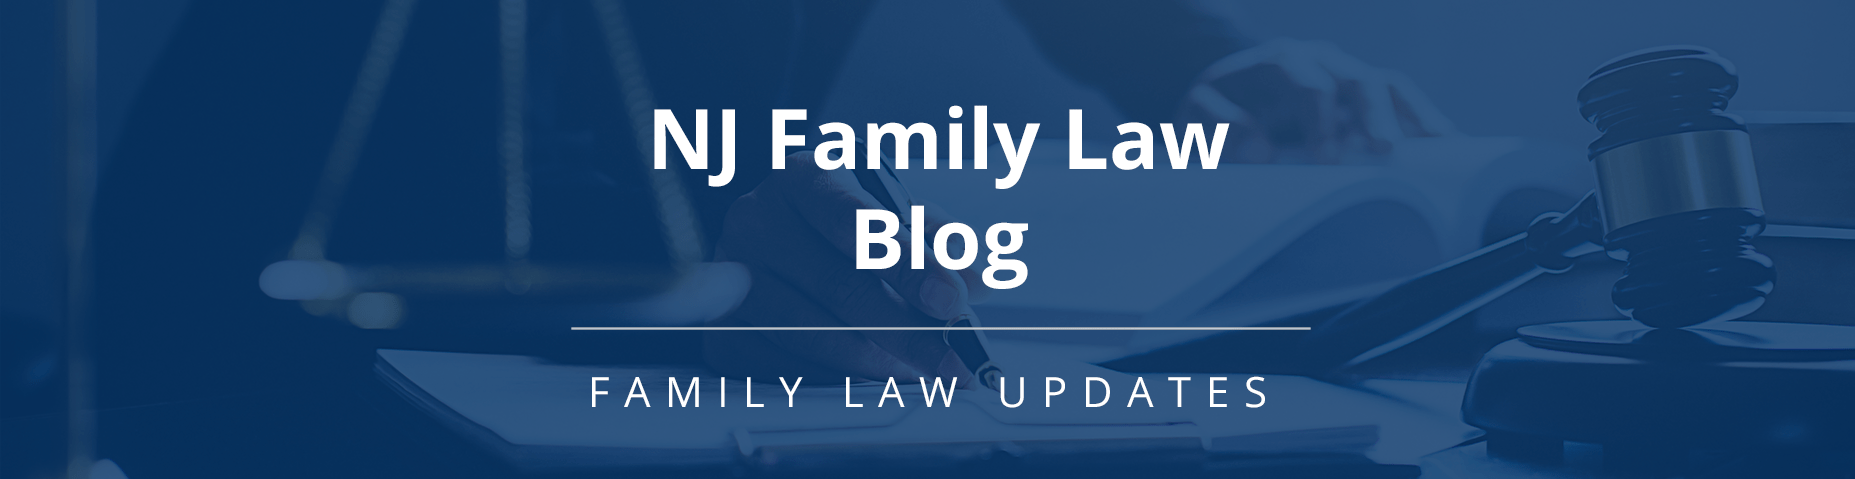 NJ Family Law Blog Header 1